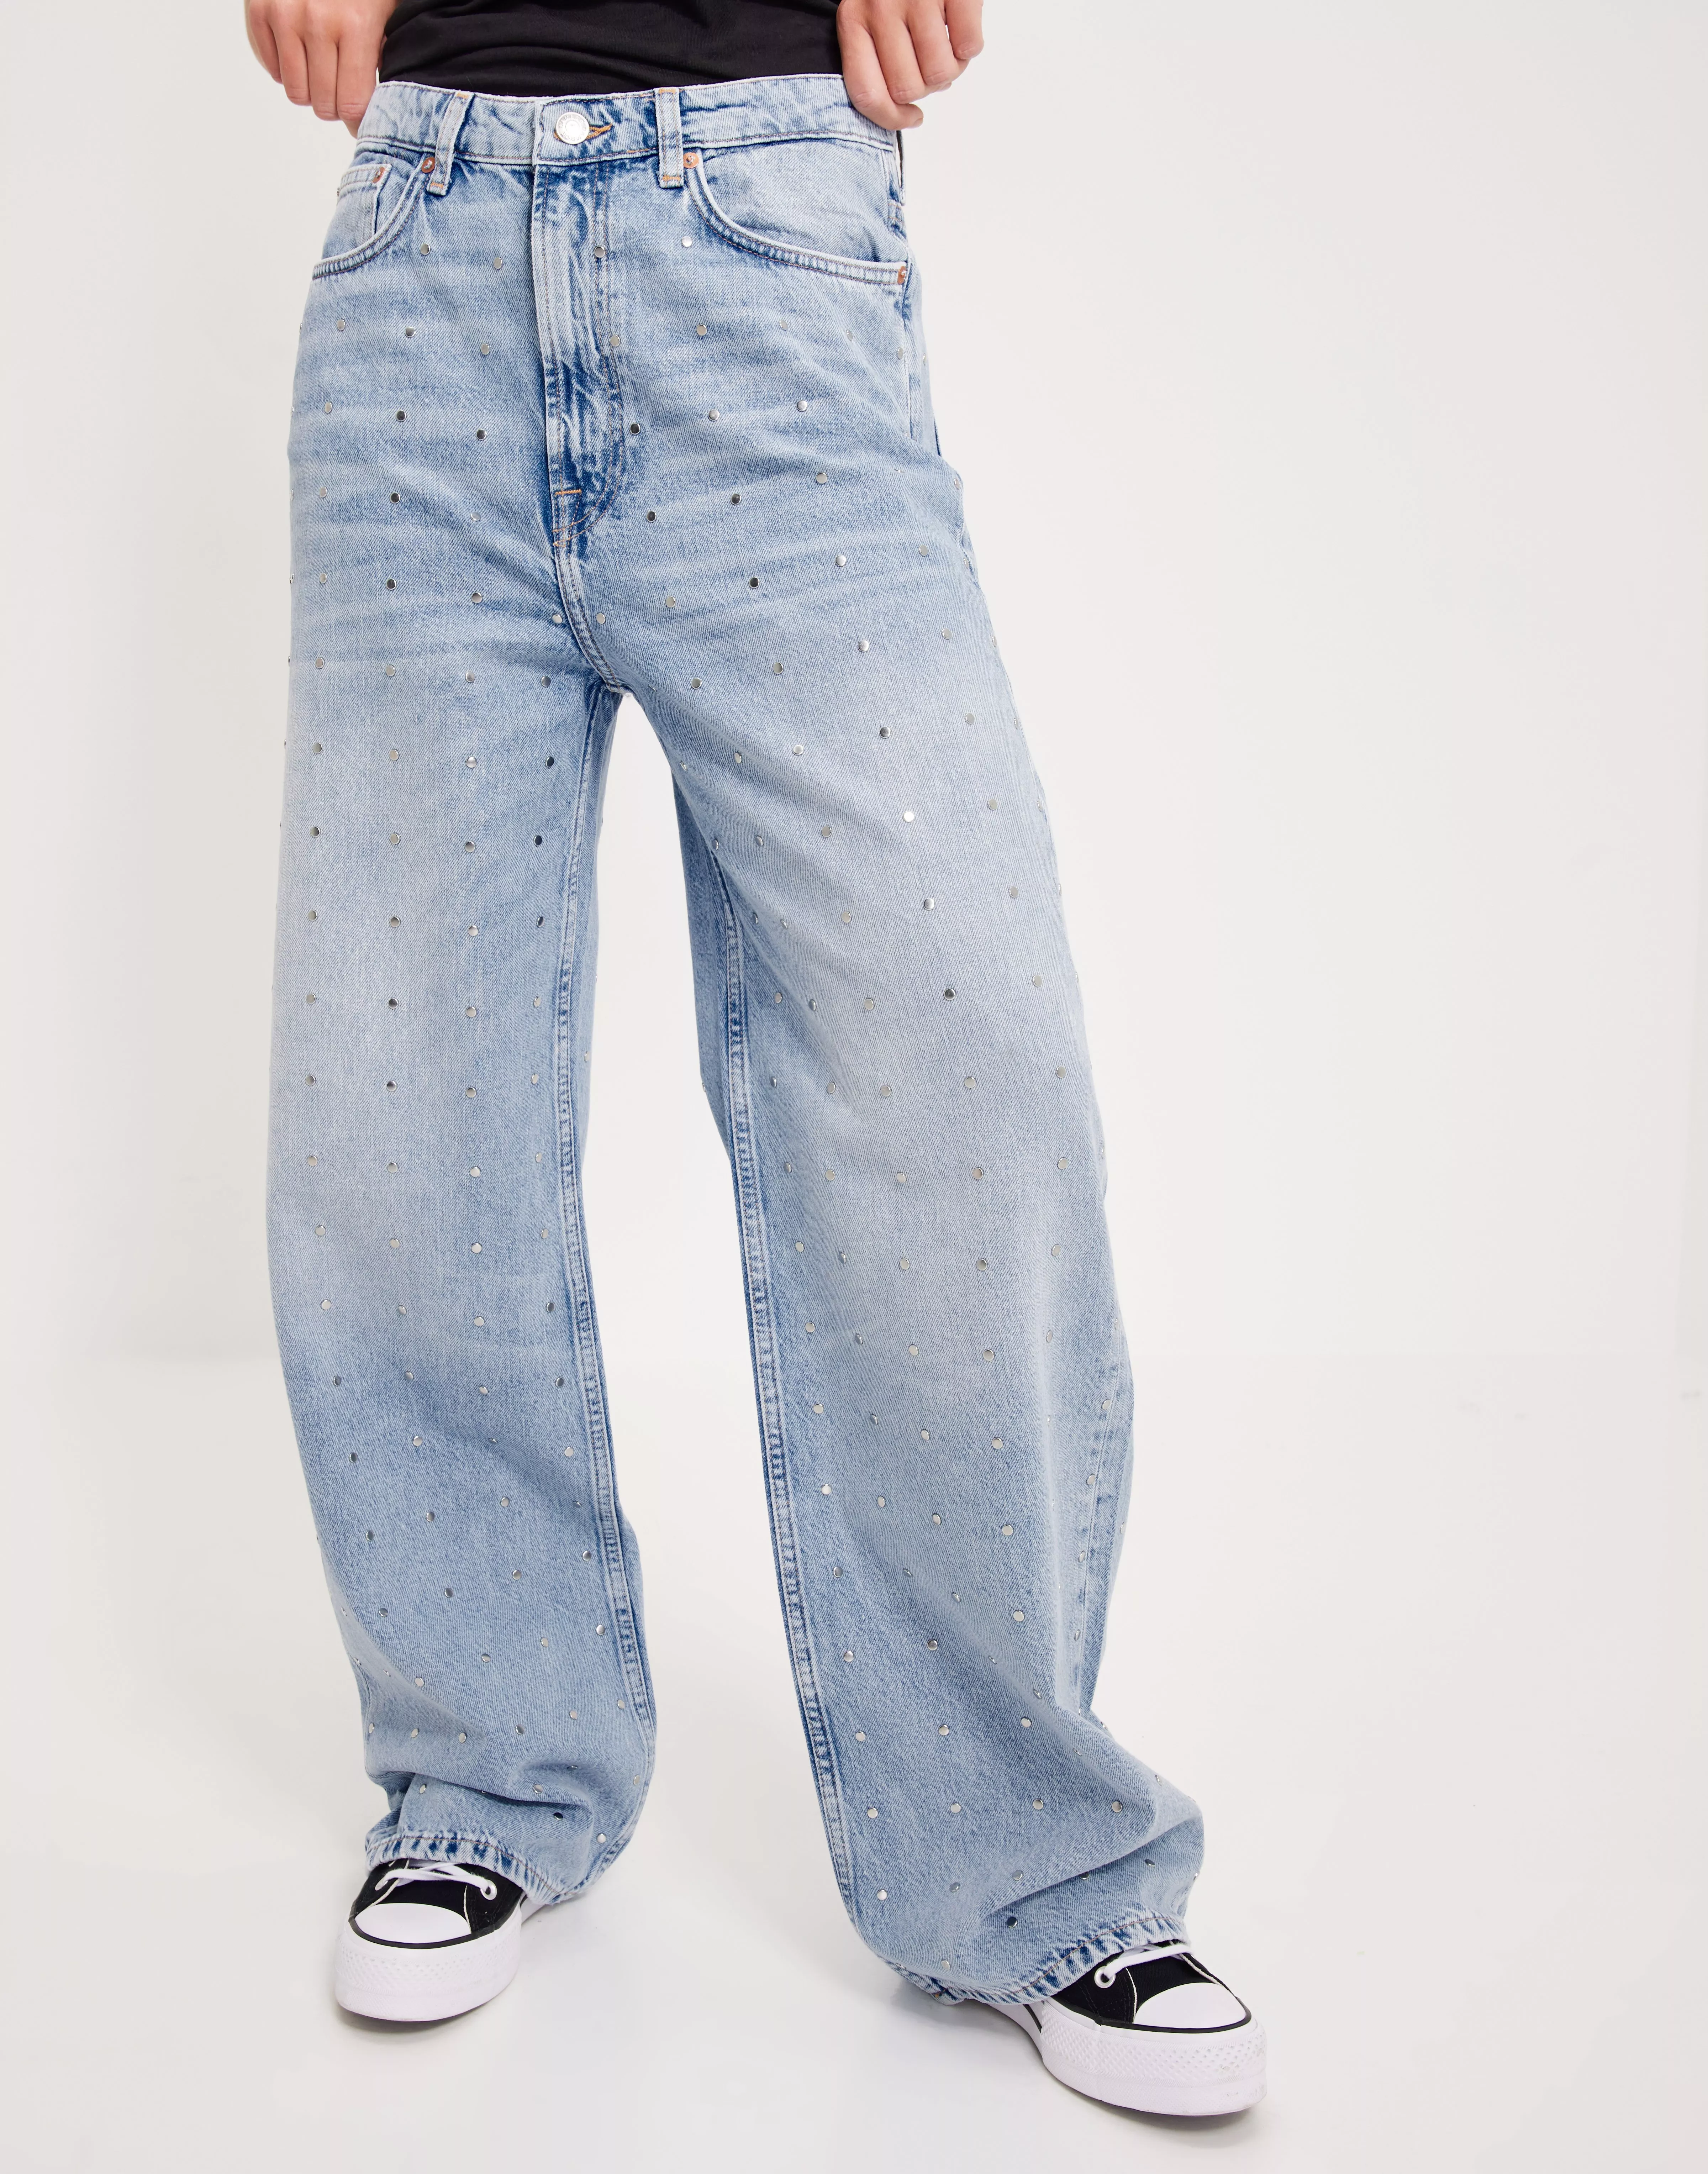 Buy Samsøe Samsøe jeans studs 14606 | Nelly.com